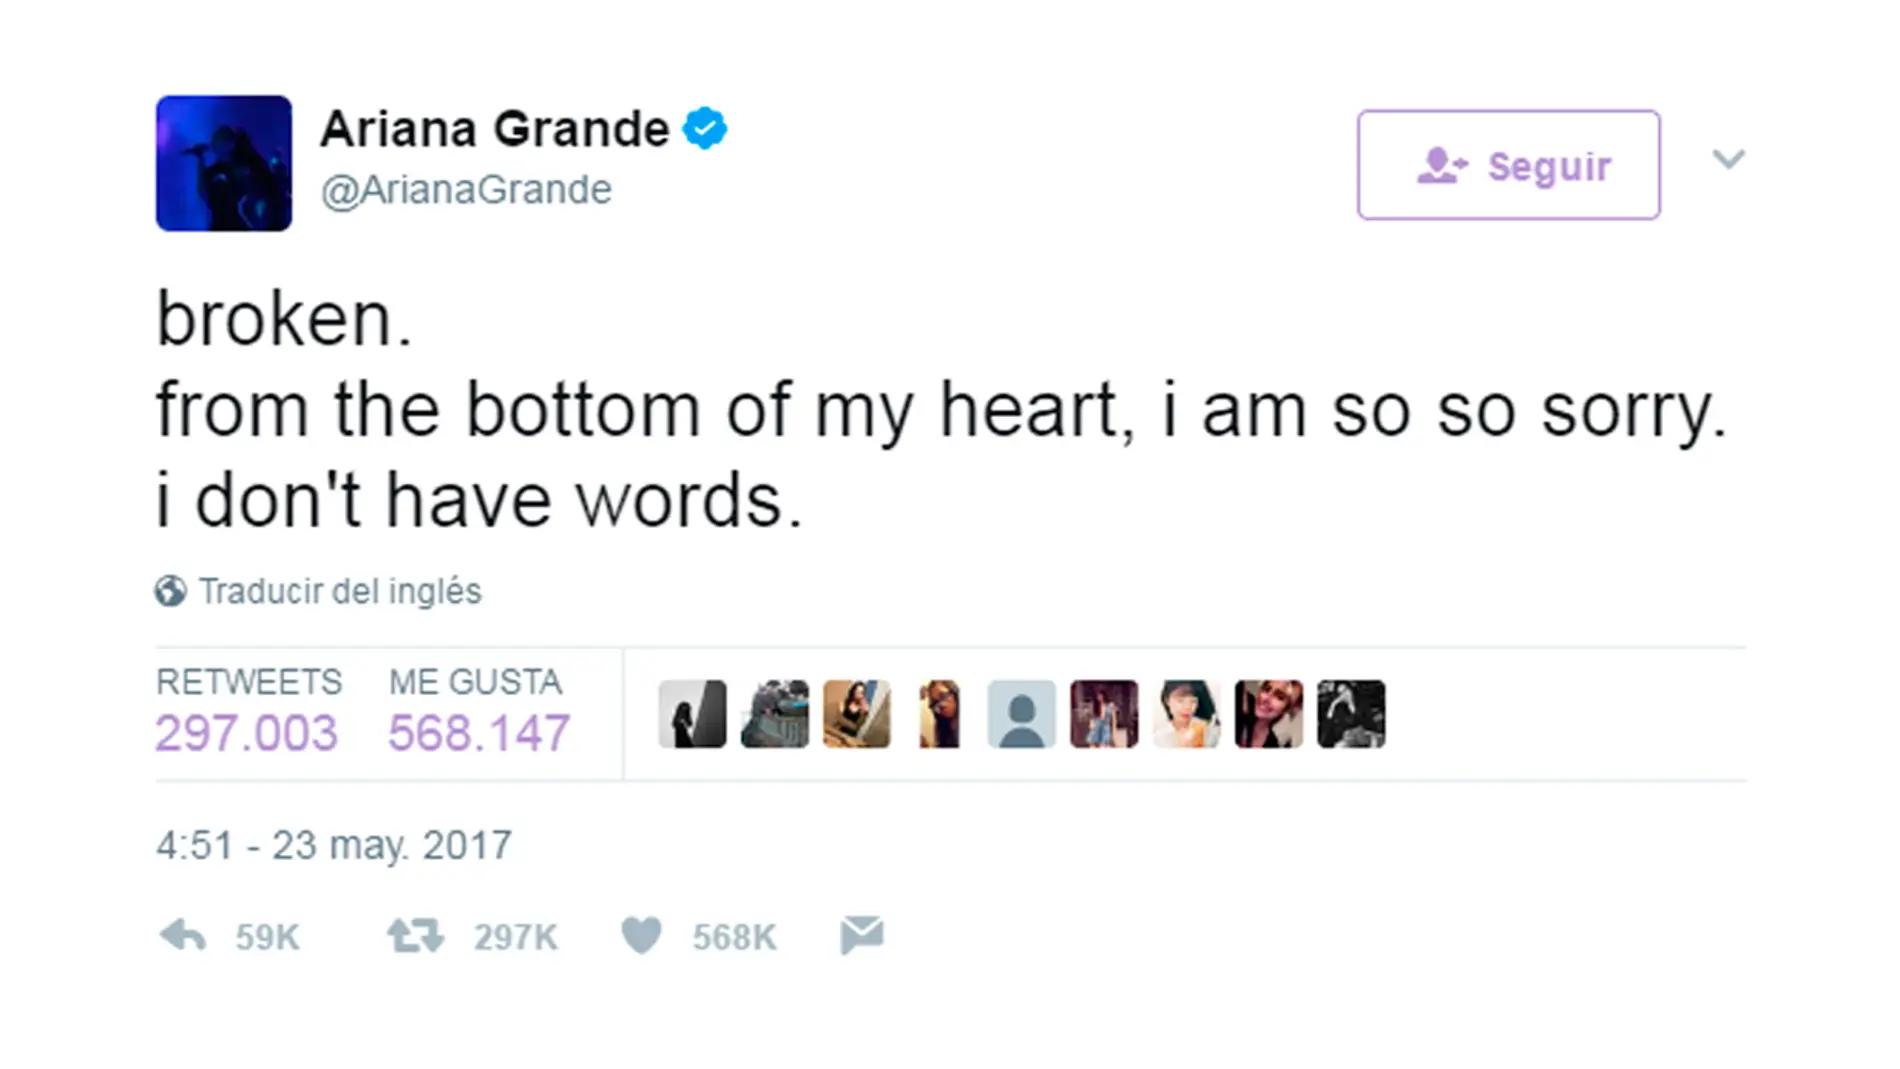 Tuit de Ariana Grande condenado el ataque durante su concierto title=